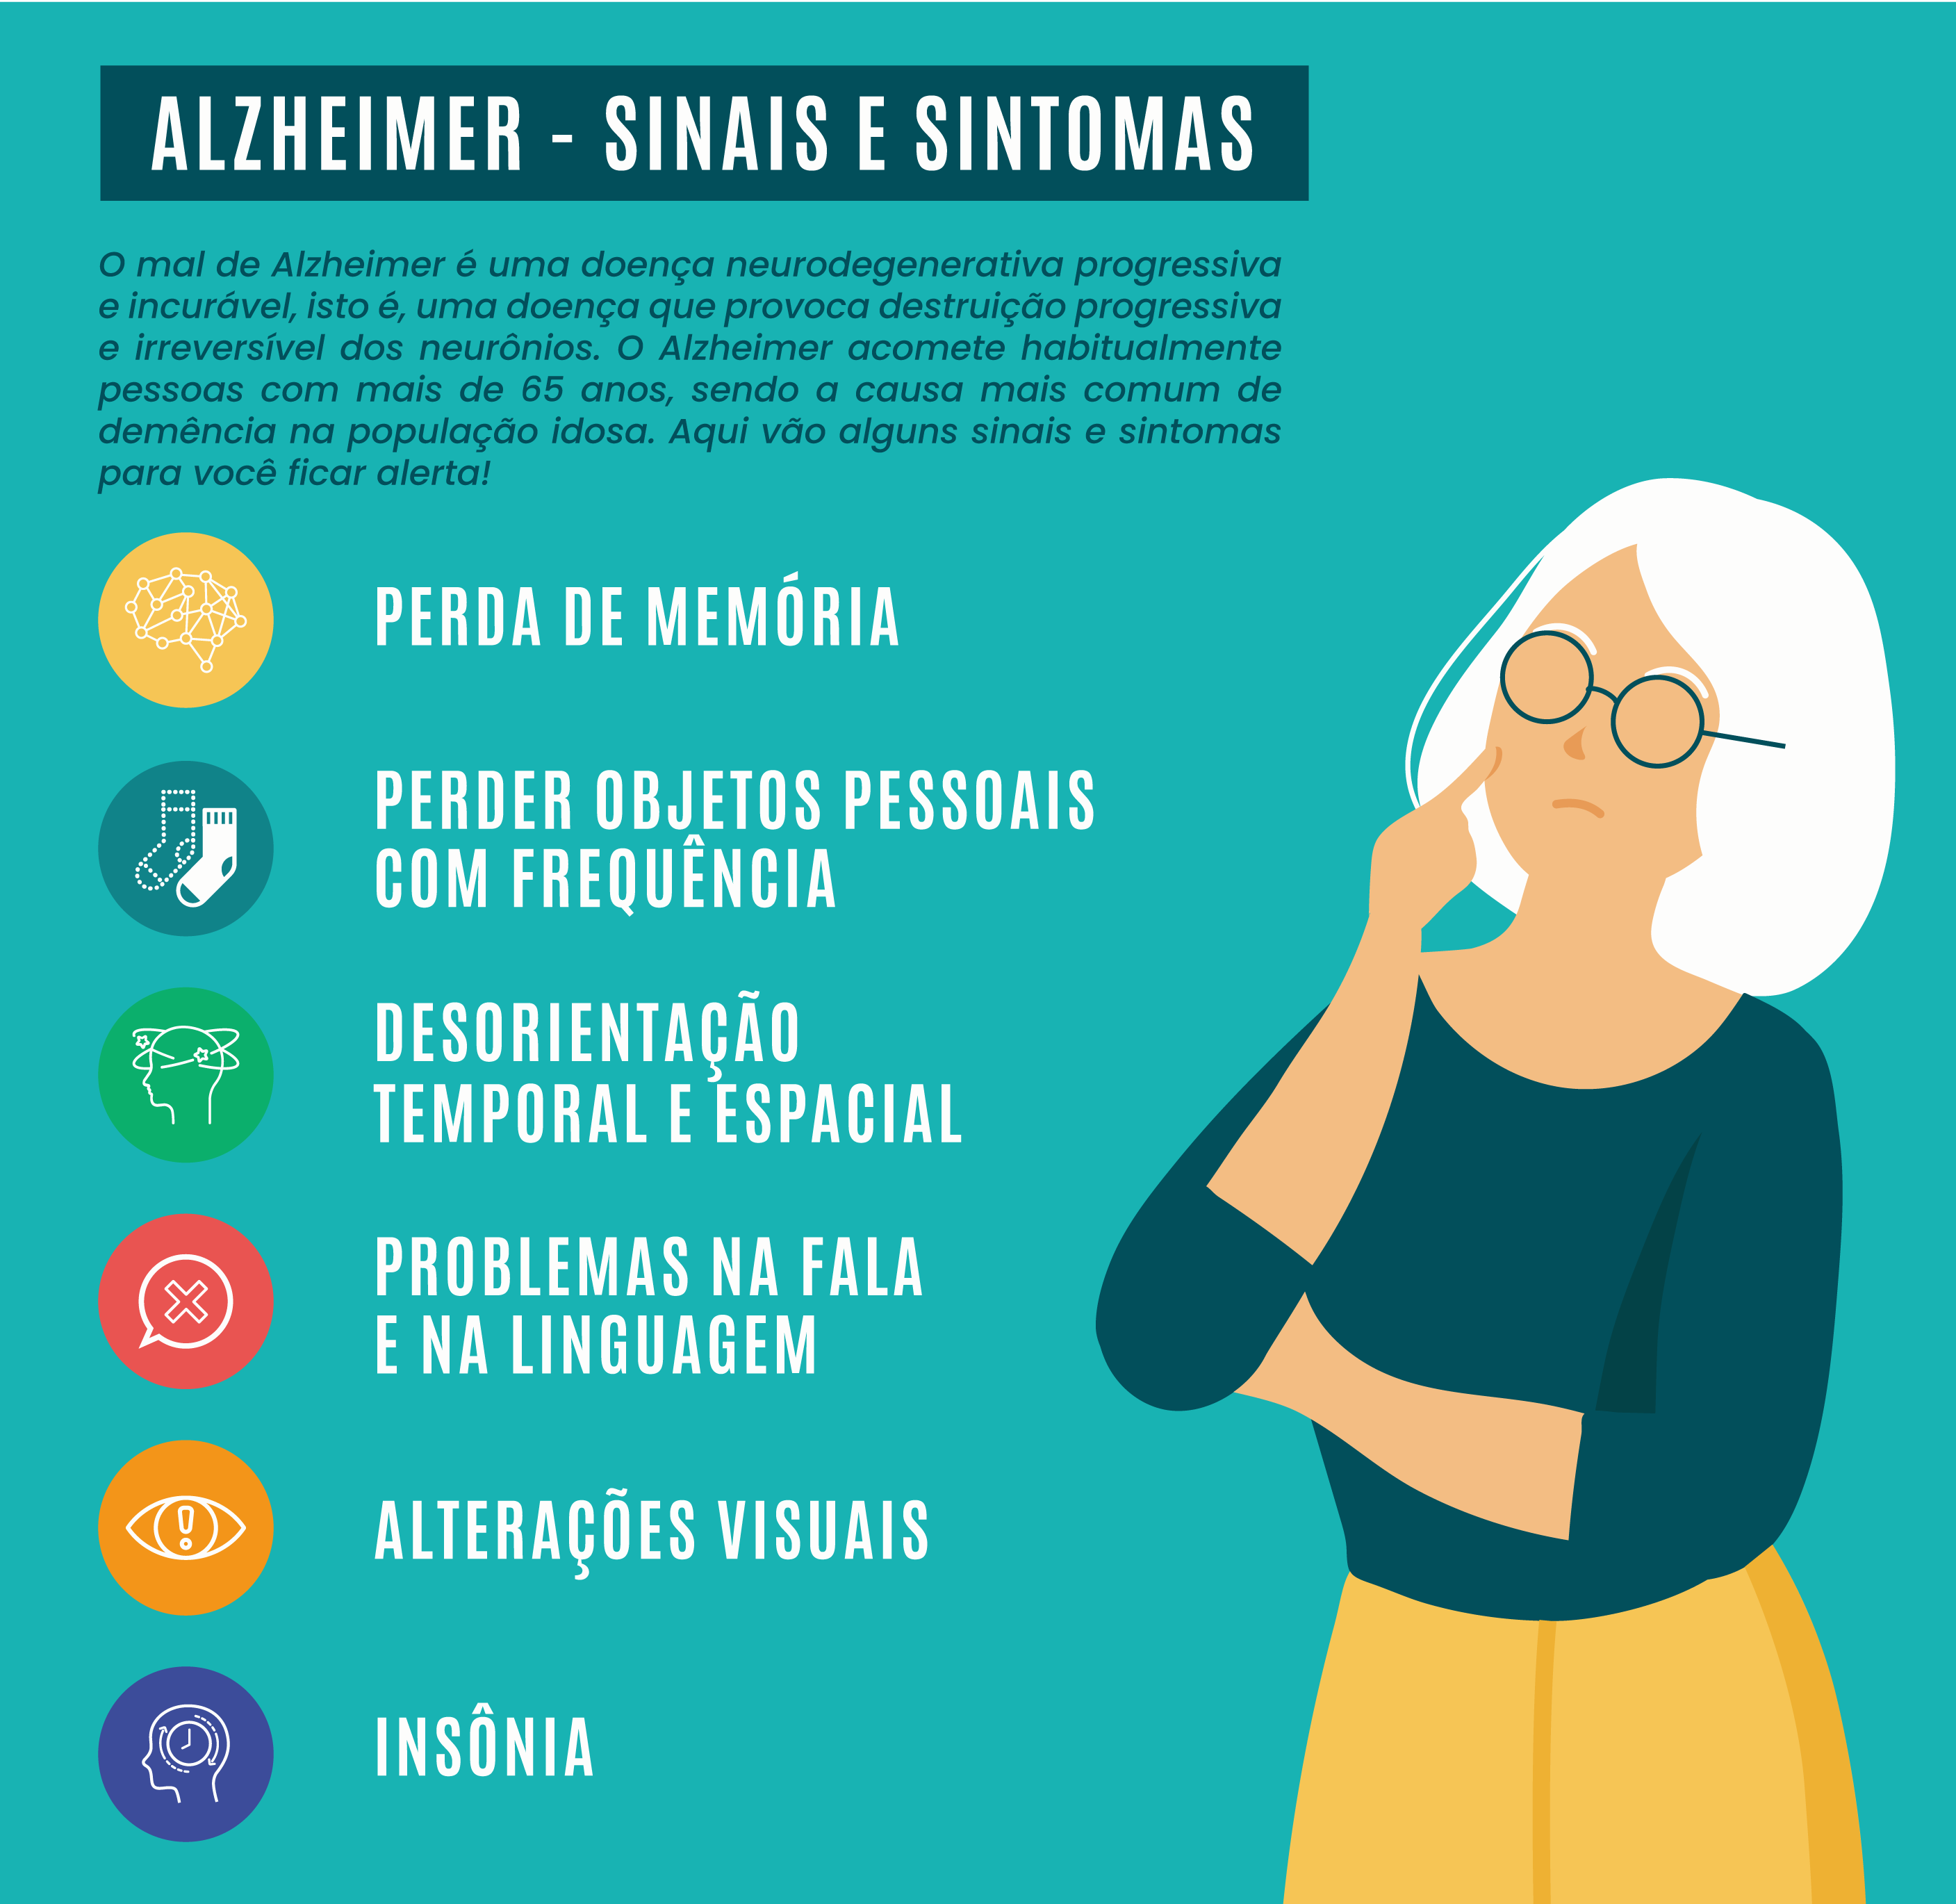 Alzheimer – sinais e sintomas